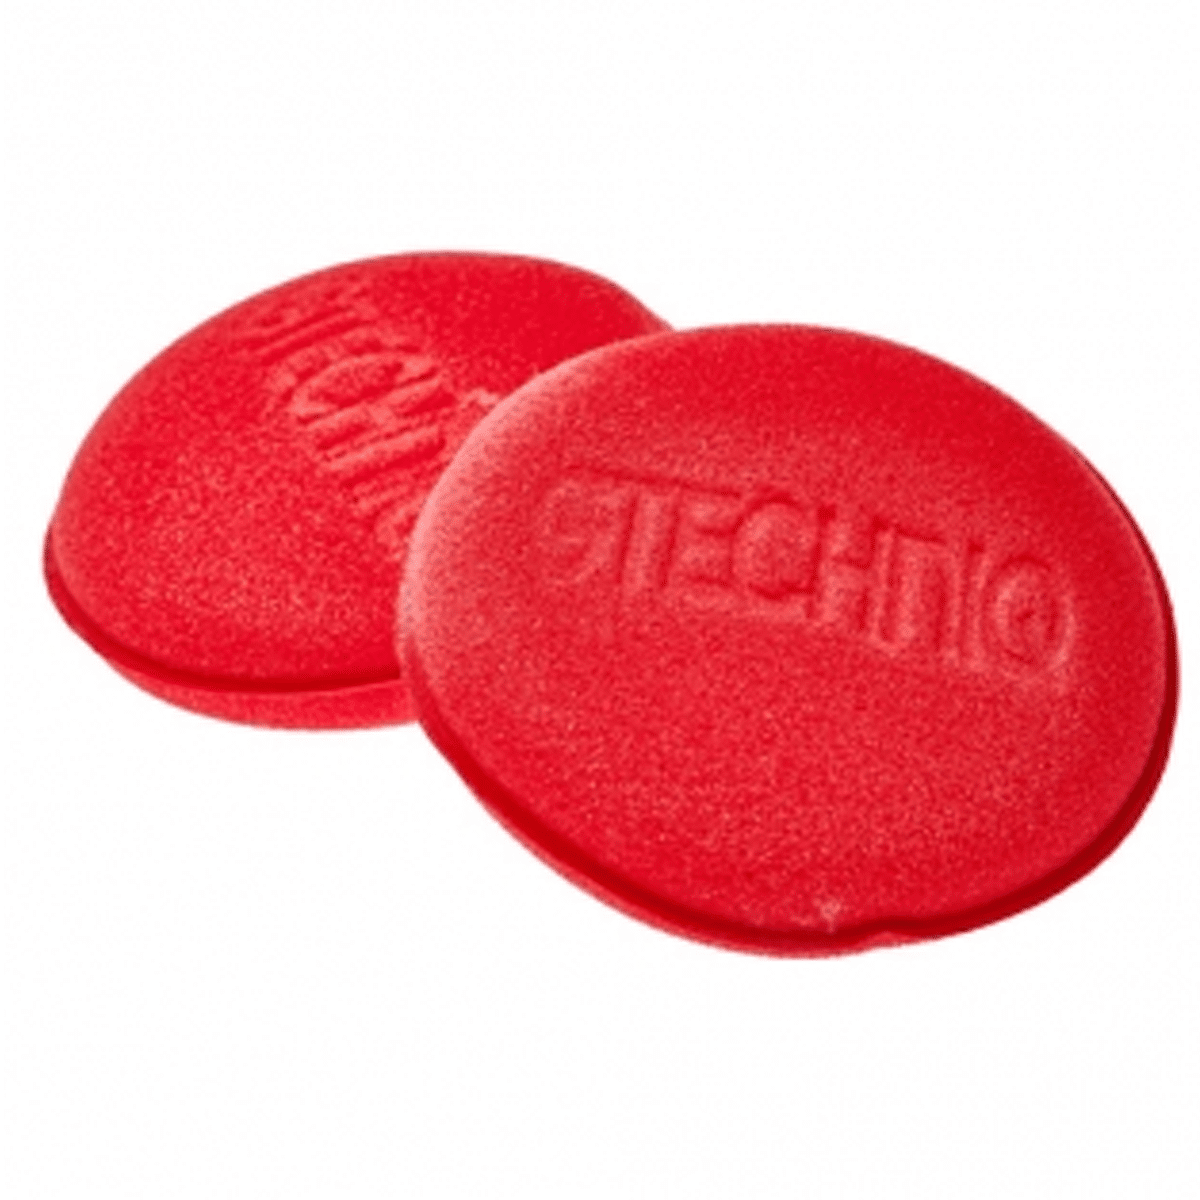 GTECHNIQ AP3 Dual Layered Soft Foam Applicator Dwustronny Gąbkowy Czerwony 2szt